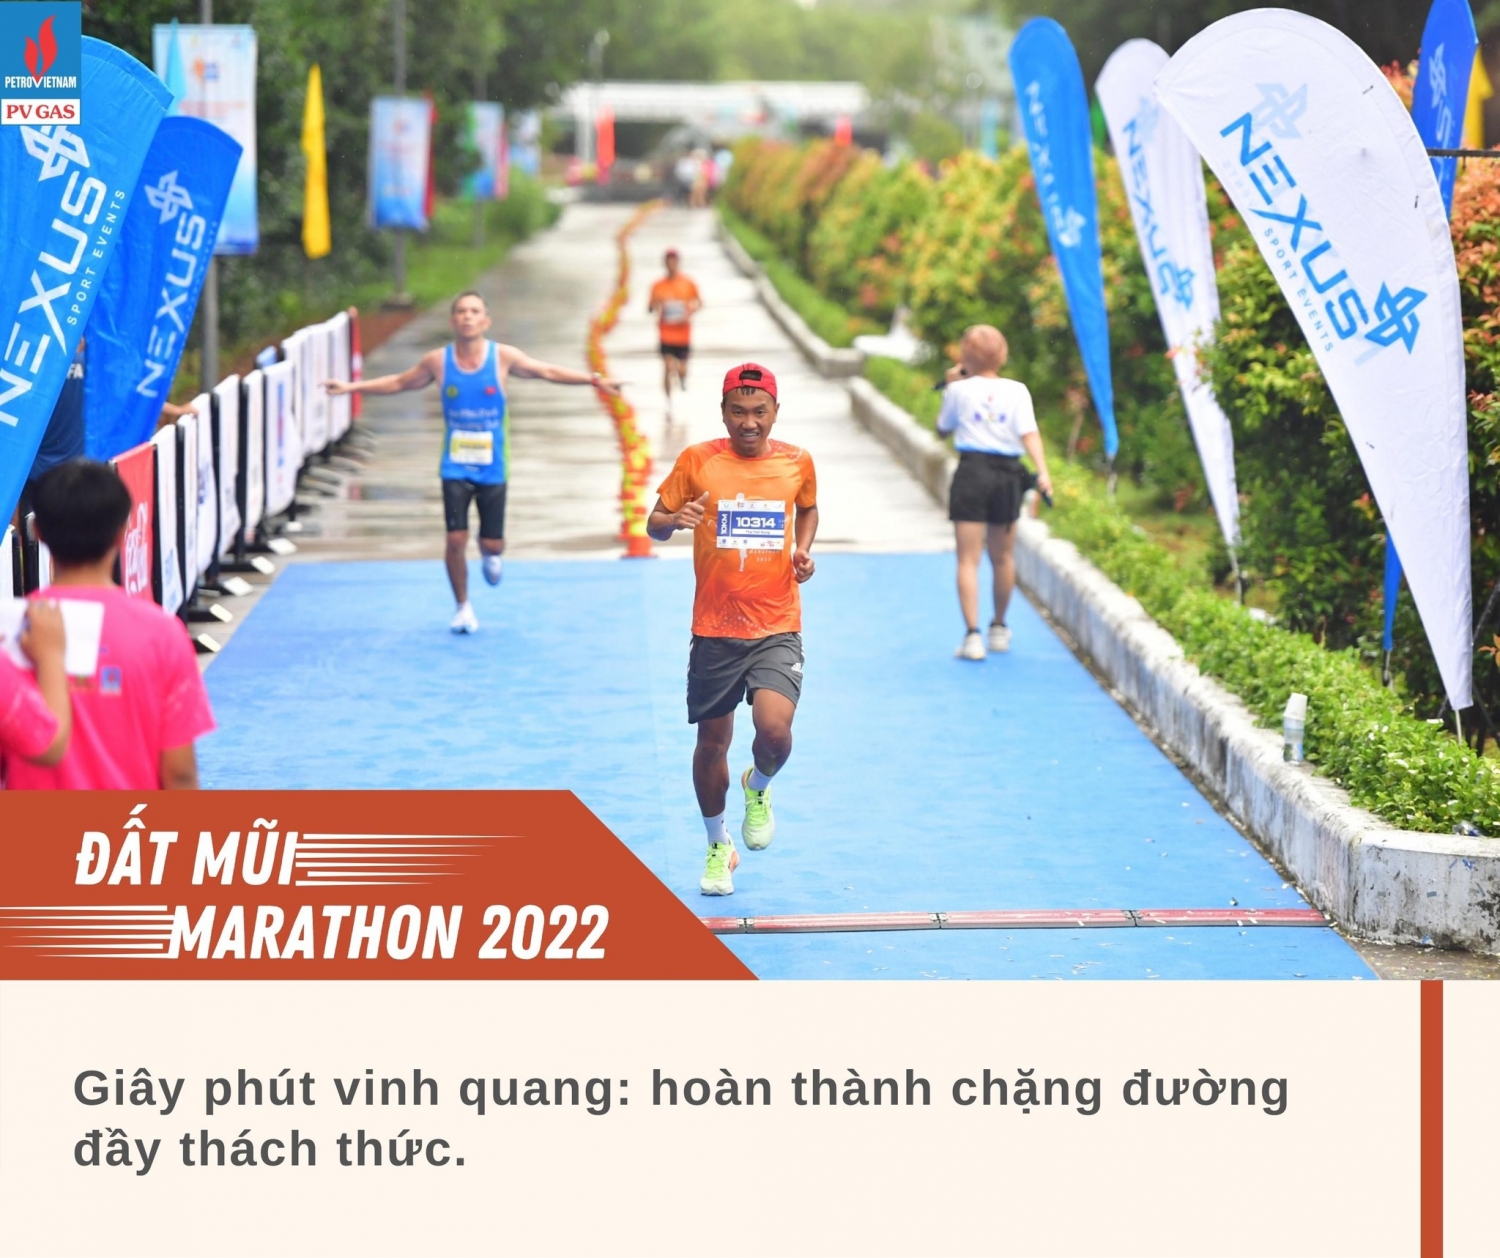 KVT cùng lan tỏa tinh thần chạy bộ tại giải Đất Mũi Marathon Cà Mau 2022 - Cúp Petrovietnam